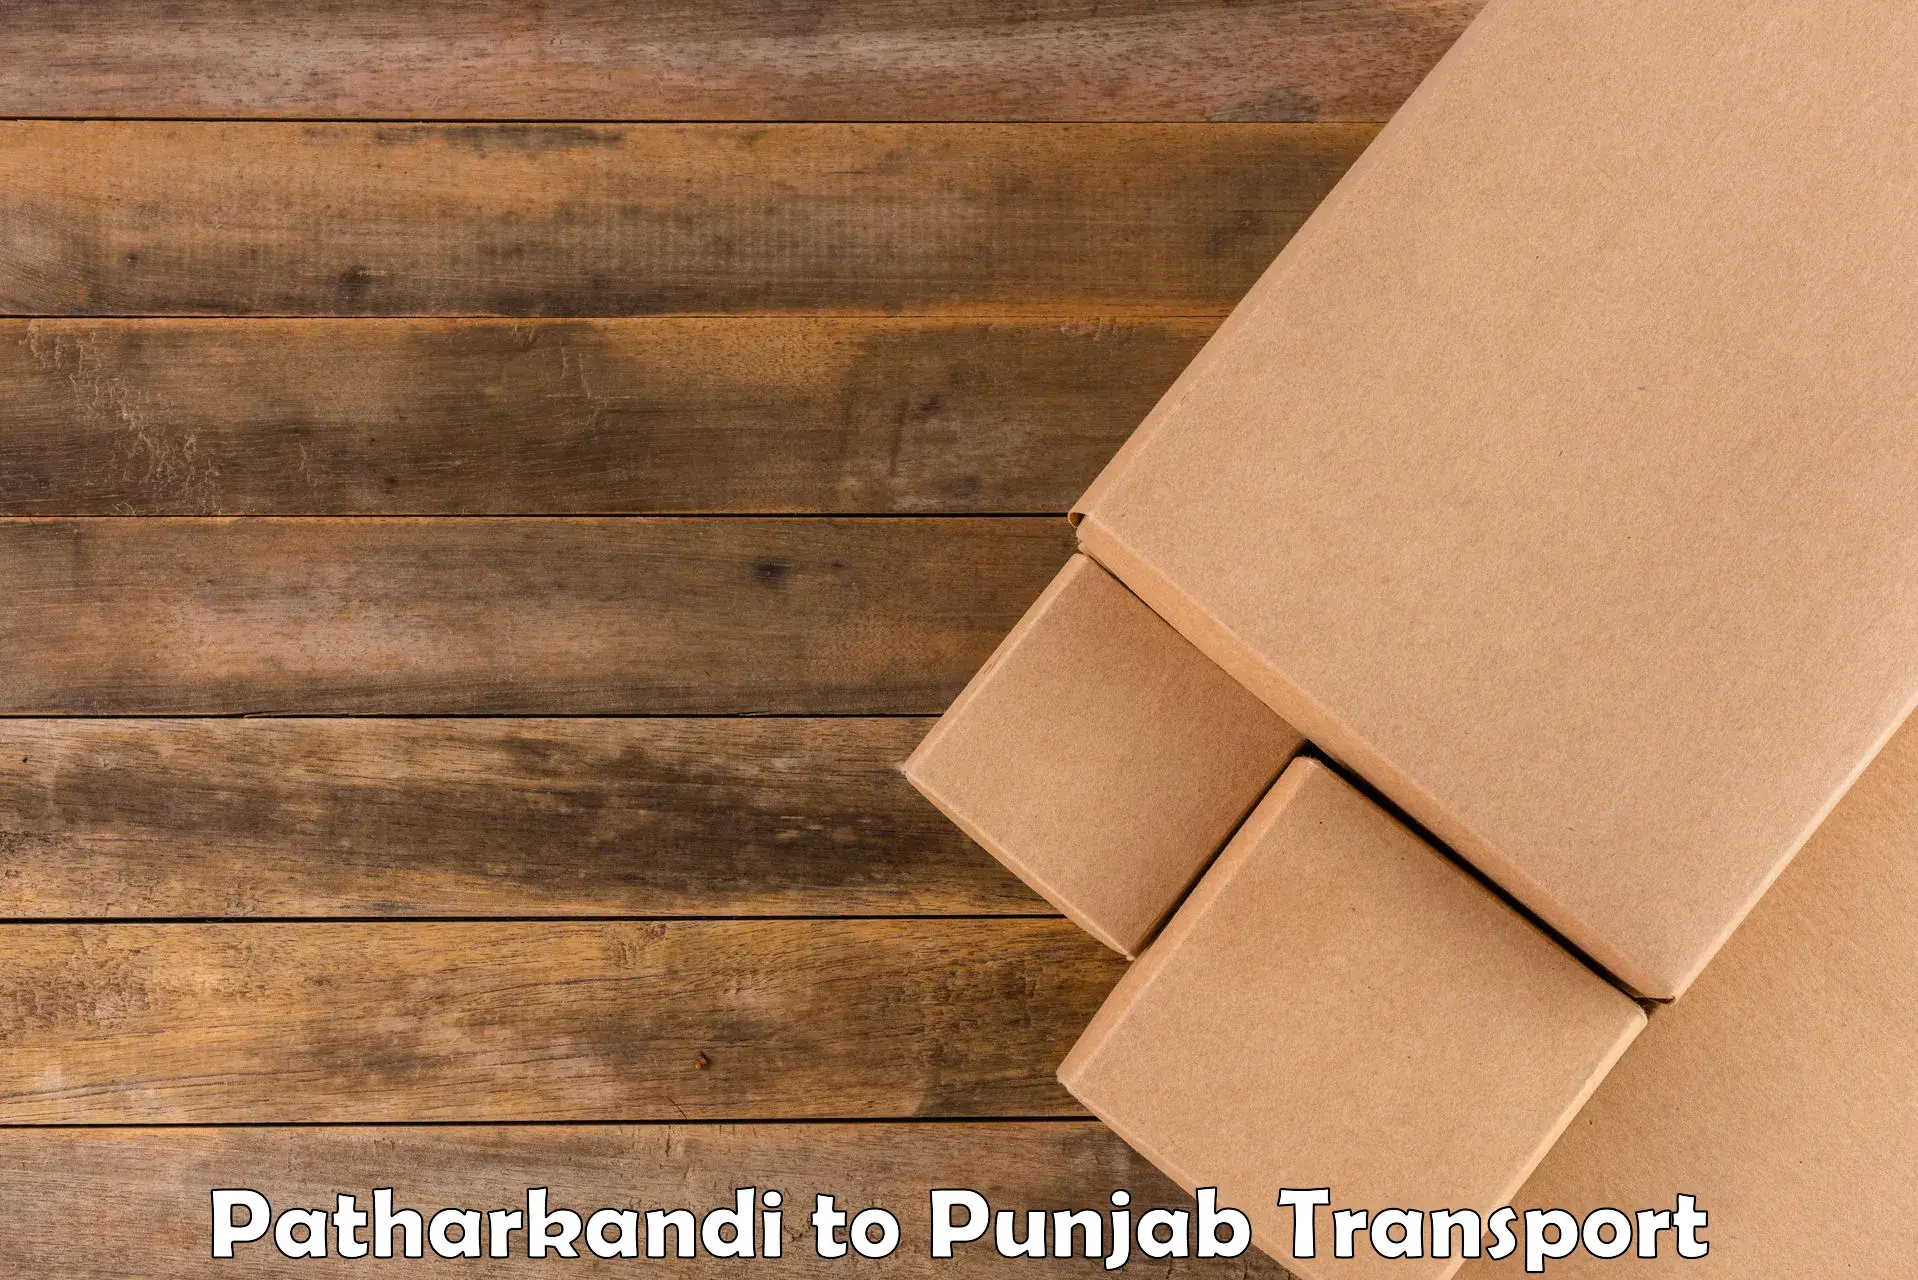 Lorry transport service Patharkandi to Samana